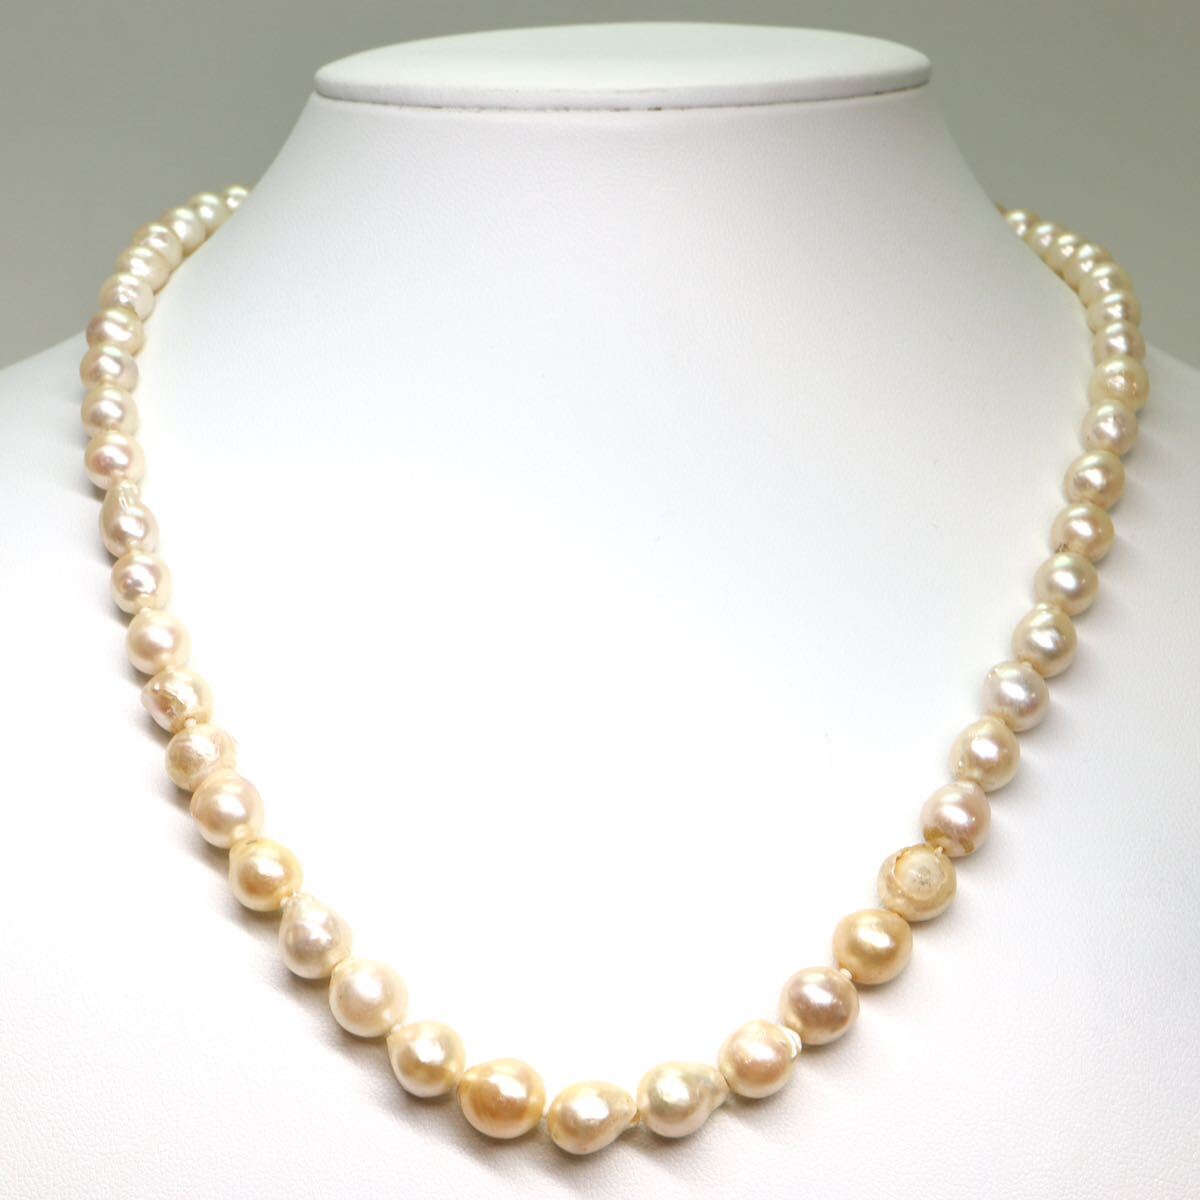 《アコヤ本真珠ネックレス》M 33.8g 約6.5-8.0mm珠 約49cm pearl necklace ジュエリー jewelry CE0/DA0の画像2